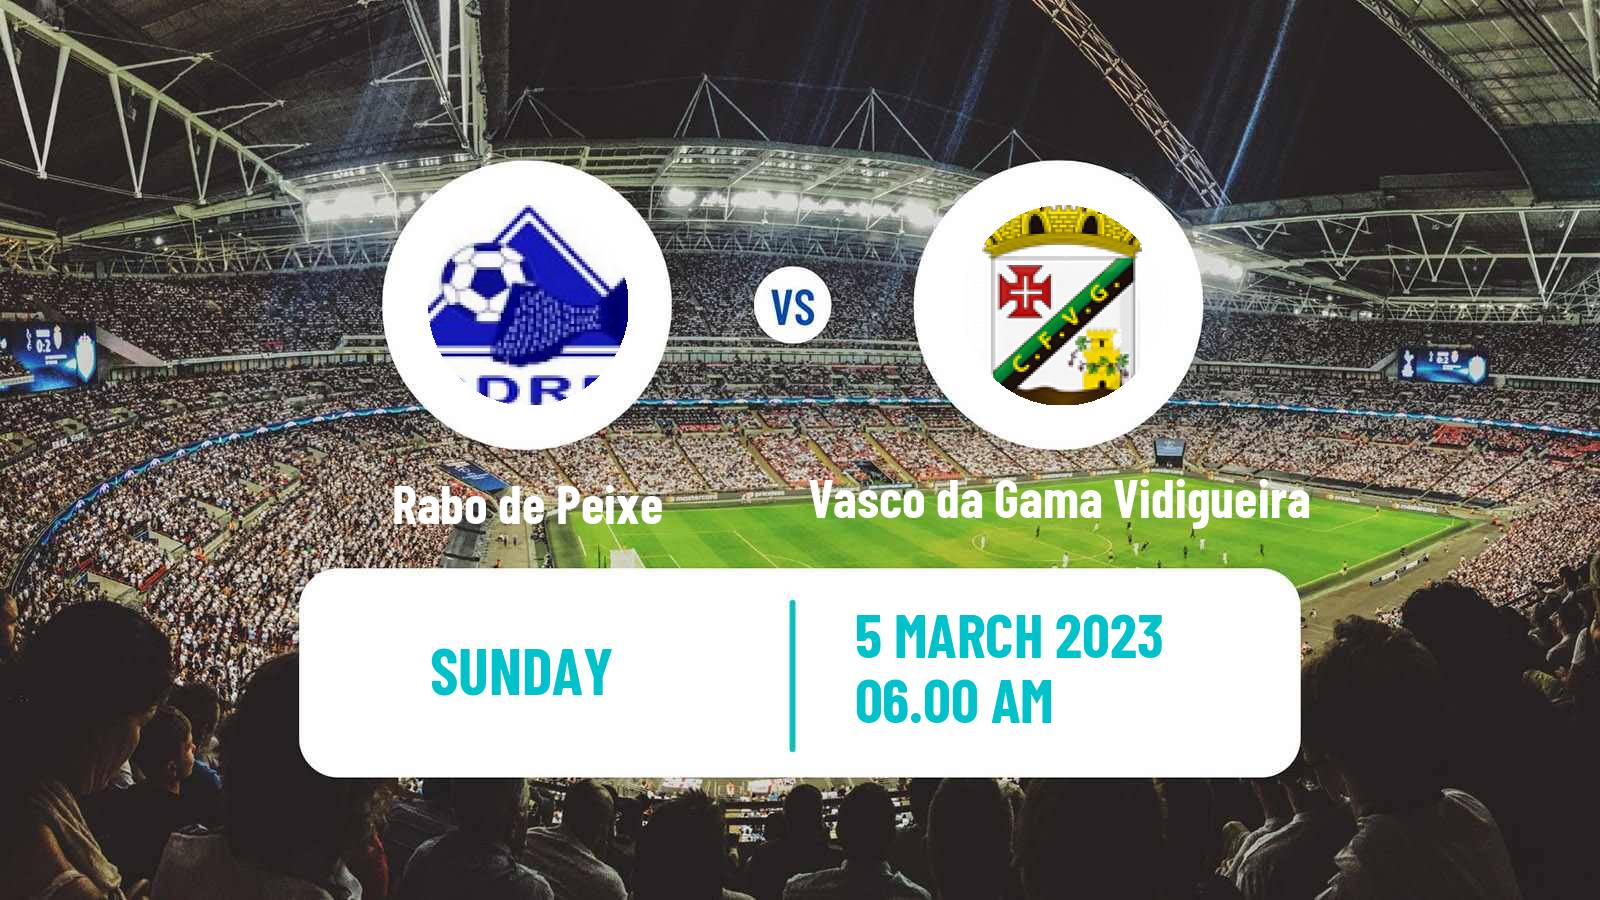 Soccer Campeonato de Portugal Rabo de Peixe - Vasco da Gama Vidigueira